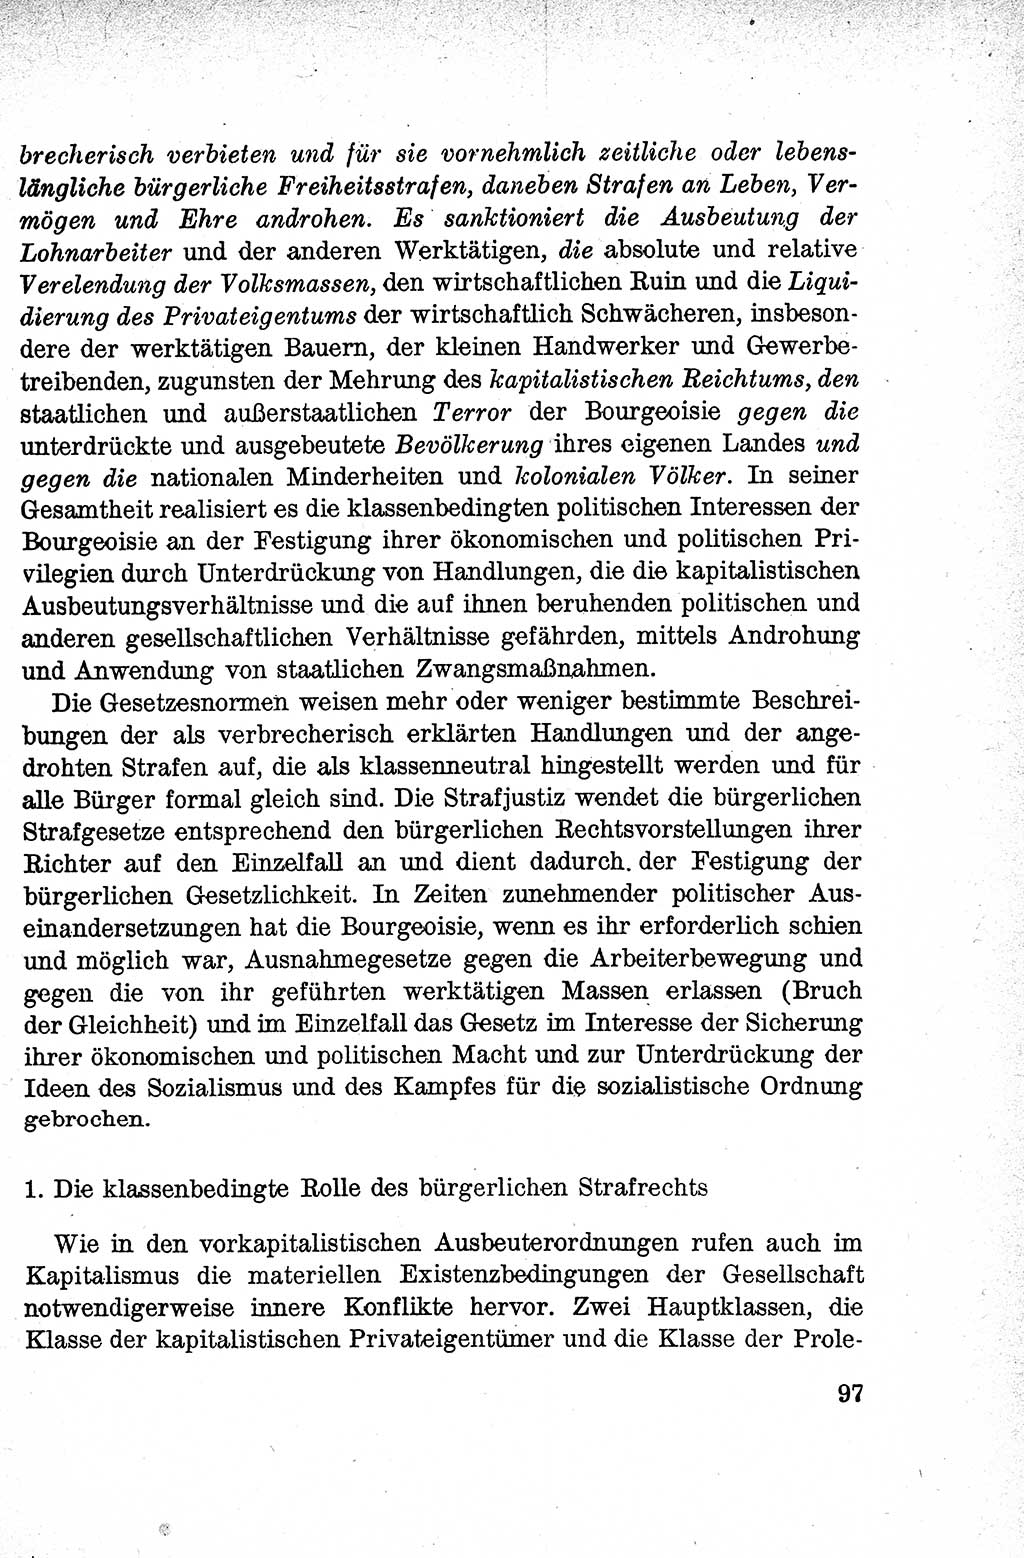 Lehrbuch des Strafrechts der Deutschen Demokratischen Republik (DDR), Allgemeiner Teil 1959, Seite 97 (Lb. Strafr. DDR AT 1959, S. 97)